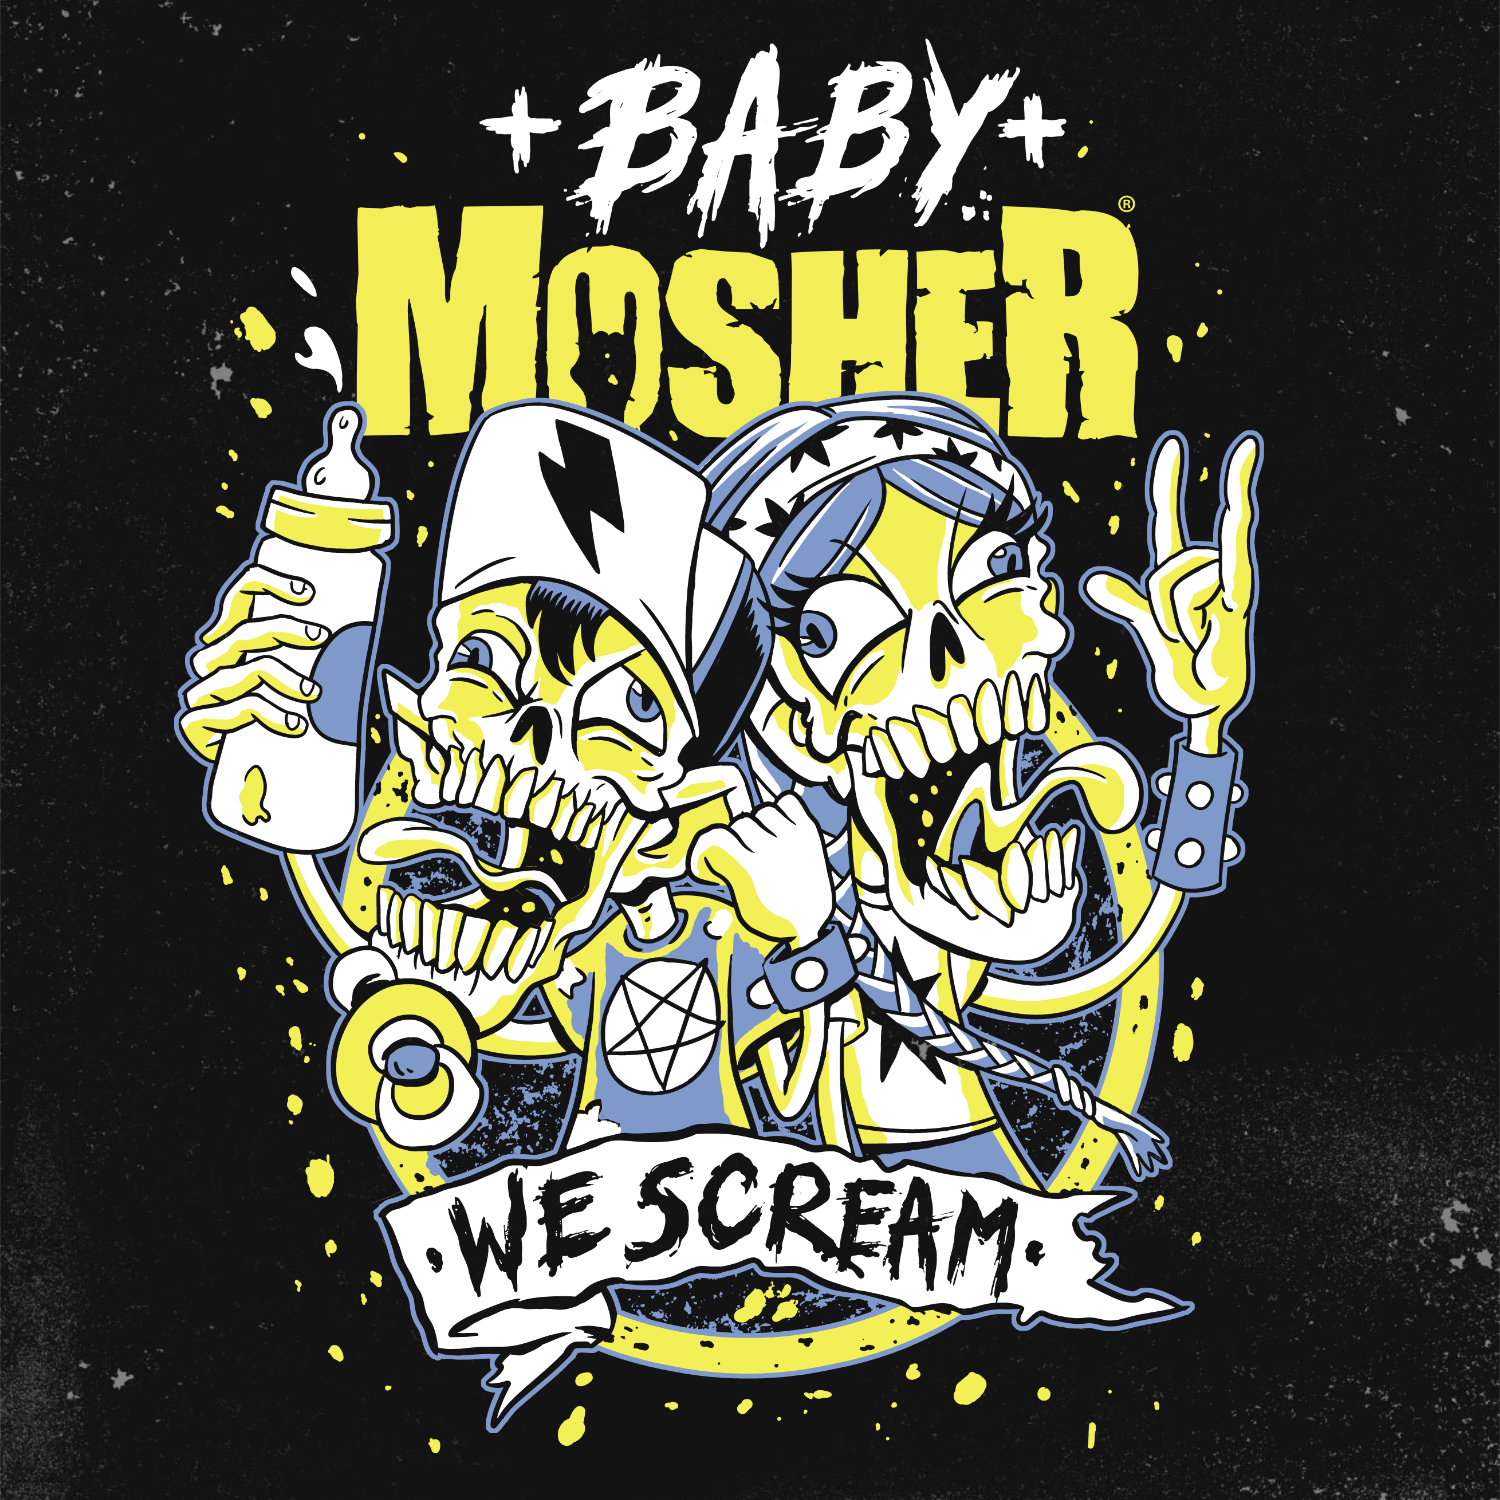 Baby Mosher - "We Scream" Babygrow for little screamers!